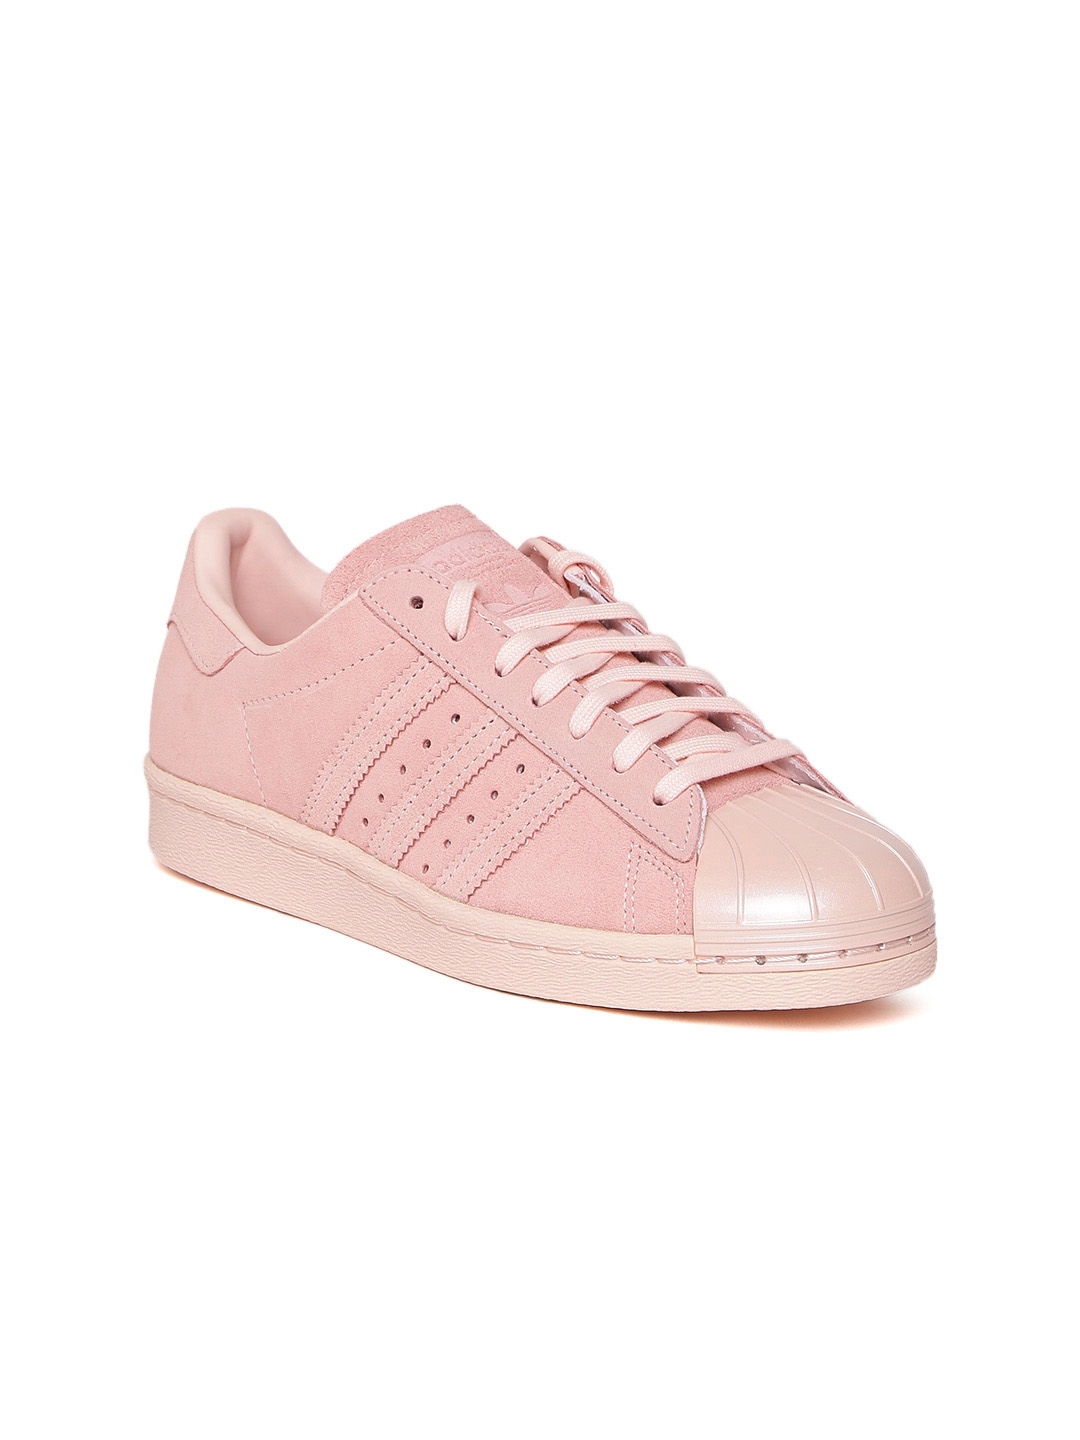 Buy ADIDAS Originals Women Pink Superstar 80S Metal Toe Suede Sneakers ...